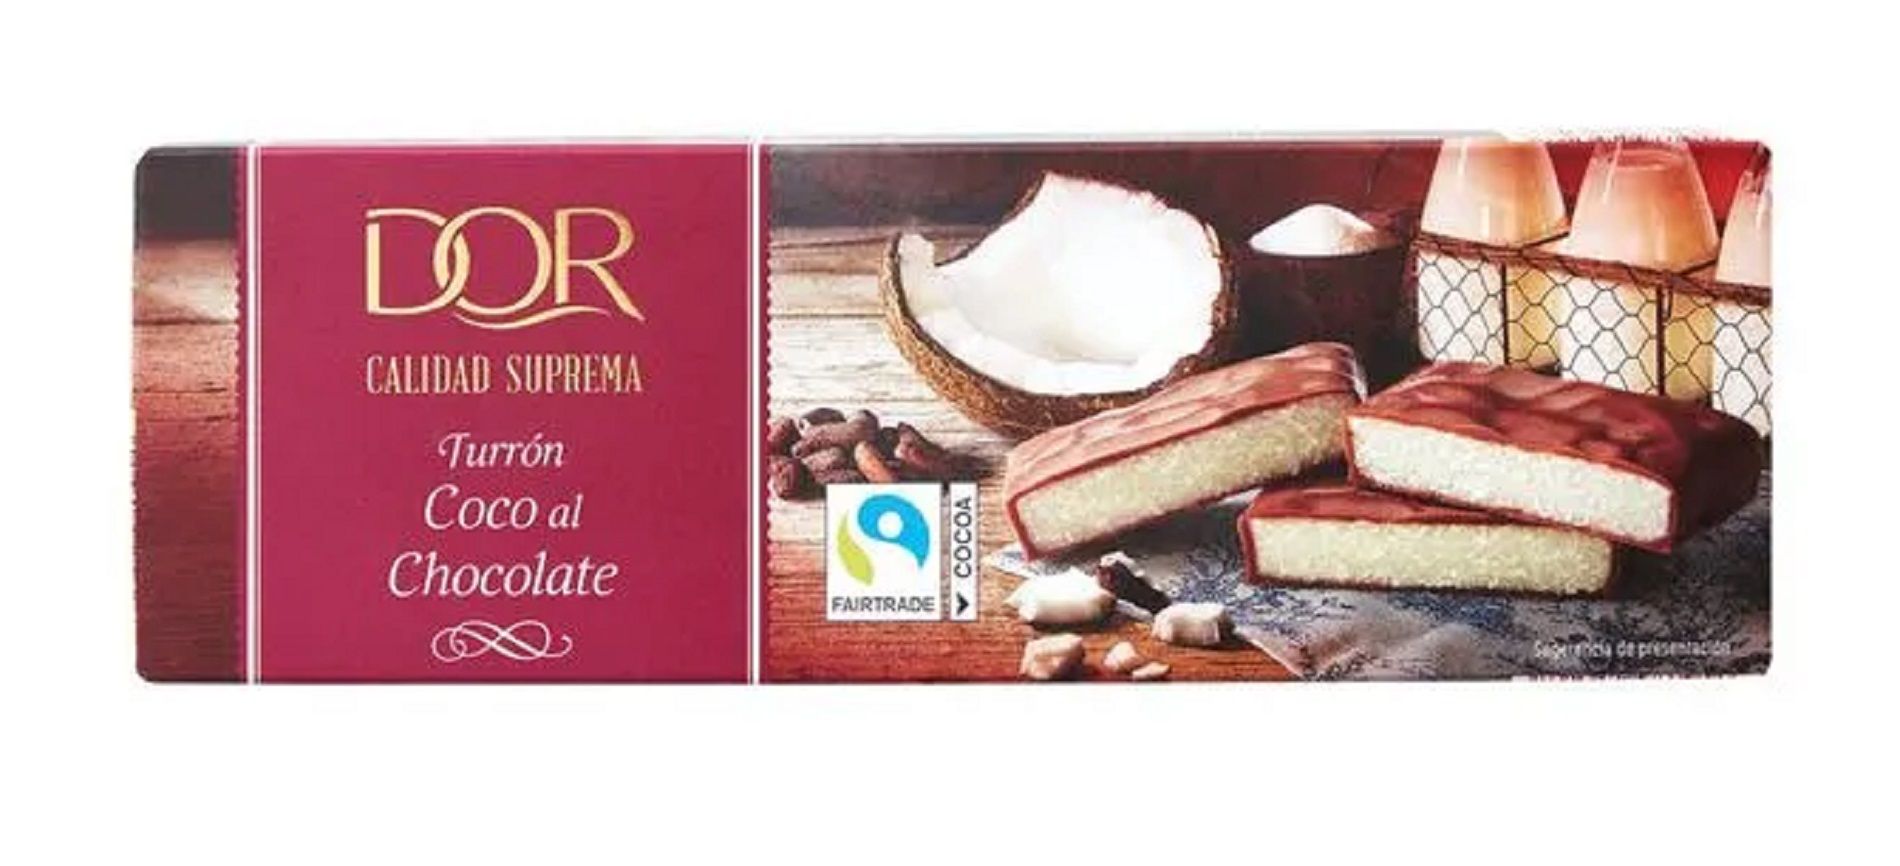 Turrón de chocolate cono coco y caramelo / Lidl